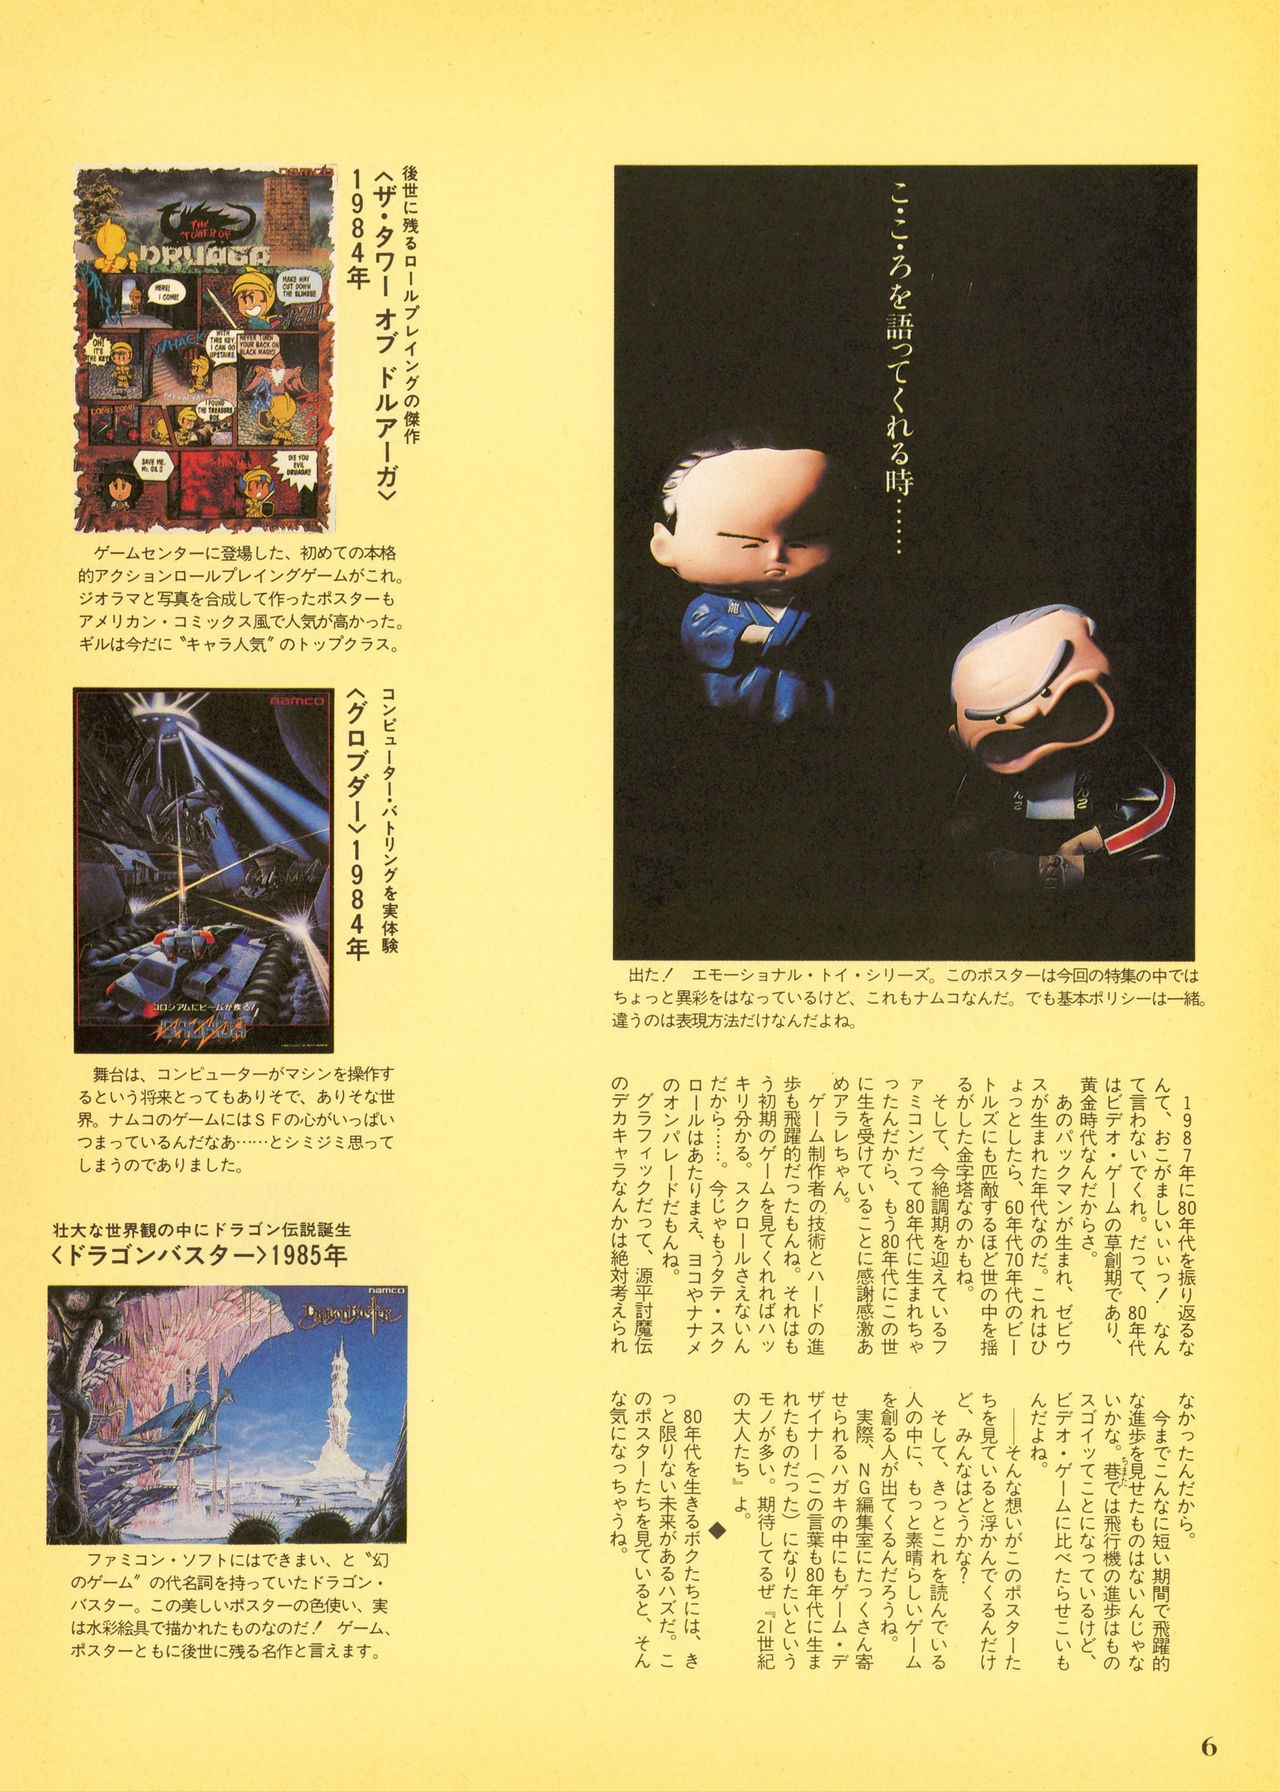 NG Namco Community Magazine 07 5